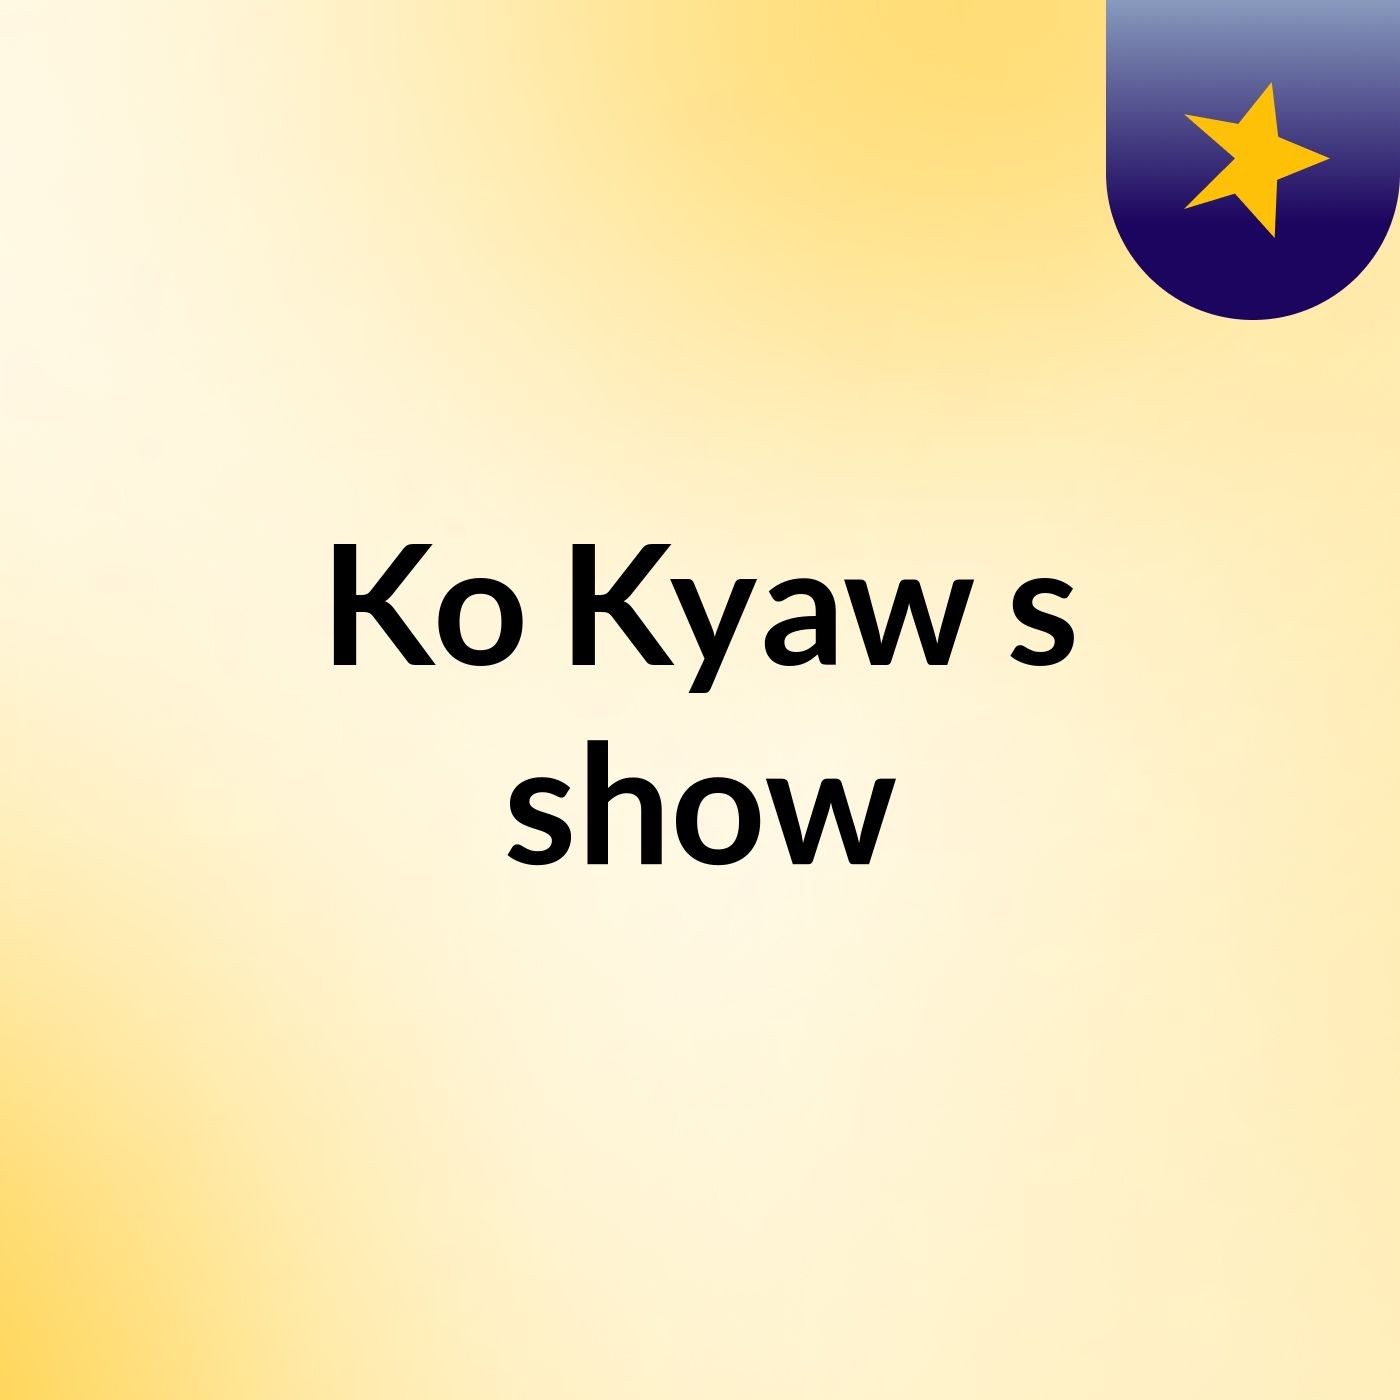 Ko Kyaw's show